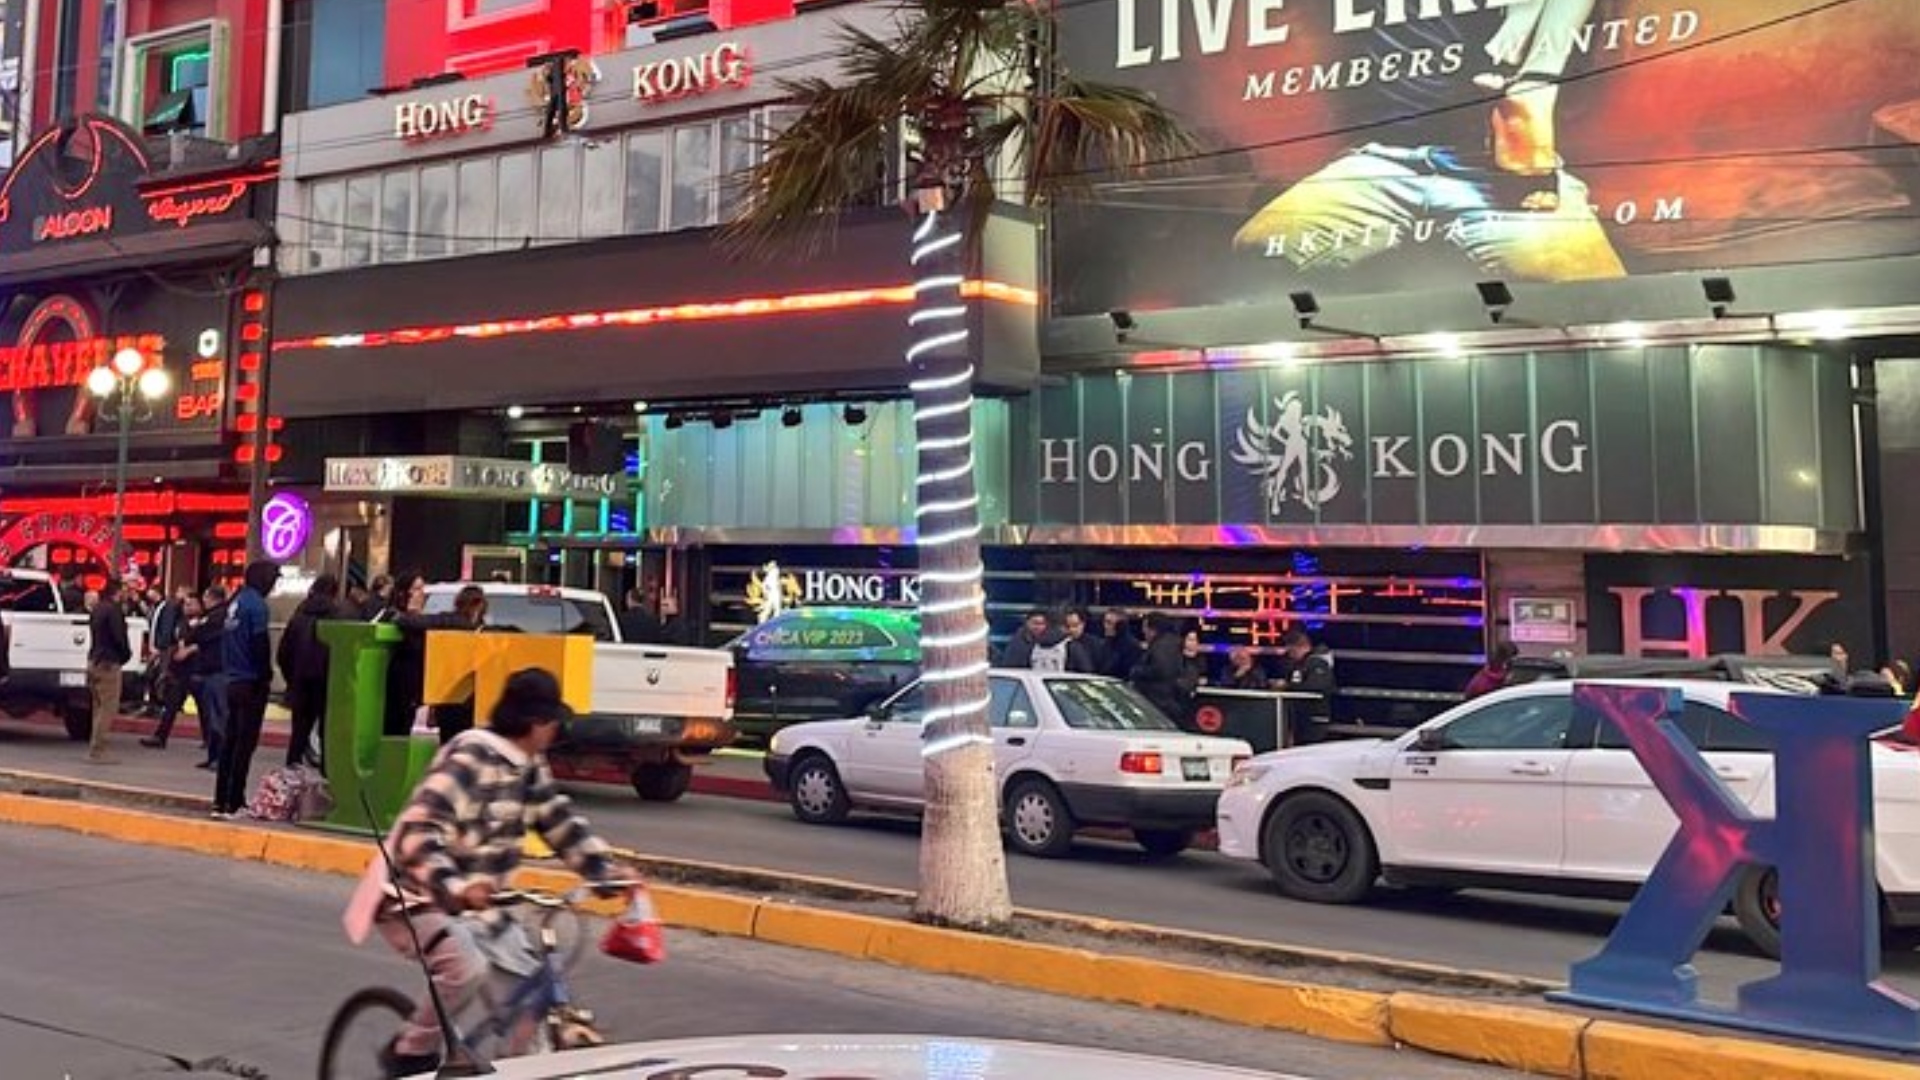 Clausuraron el Club Hong Kong en Tijuana por investigación de un homicidio